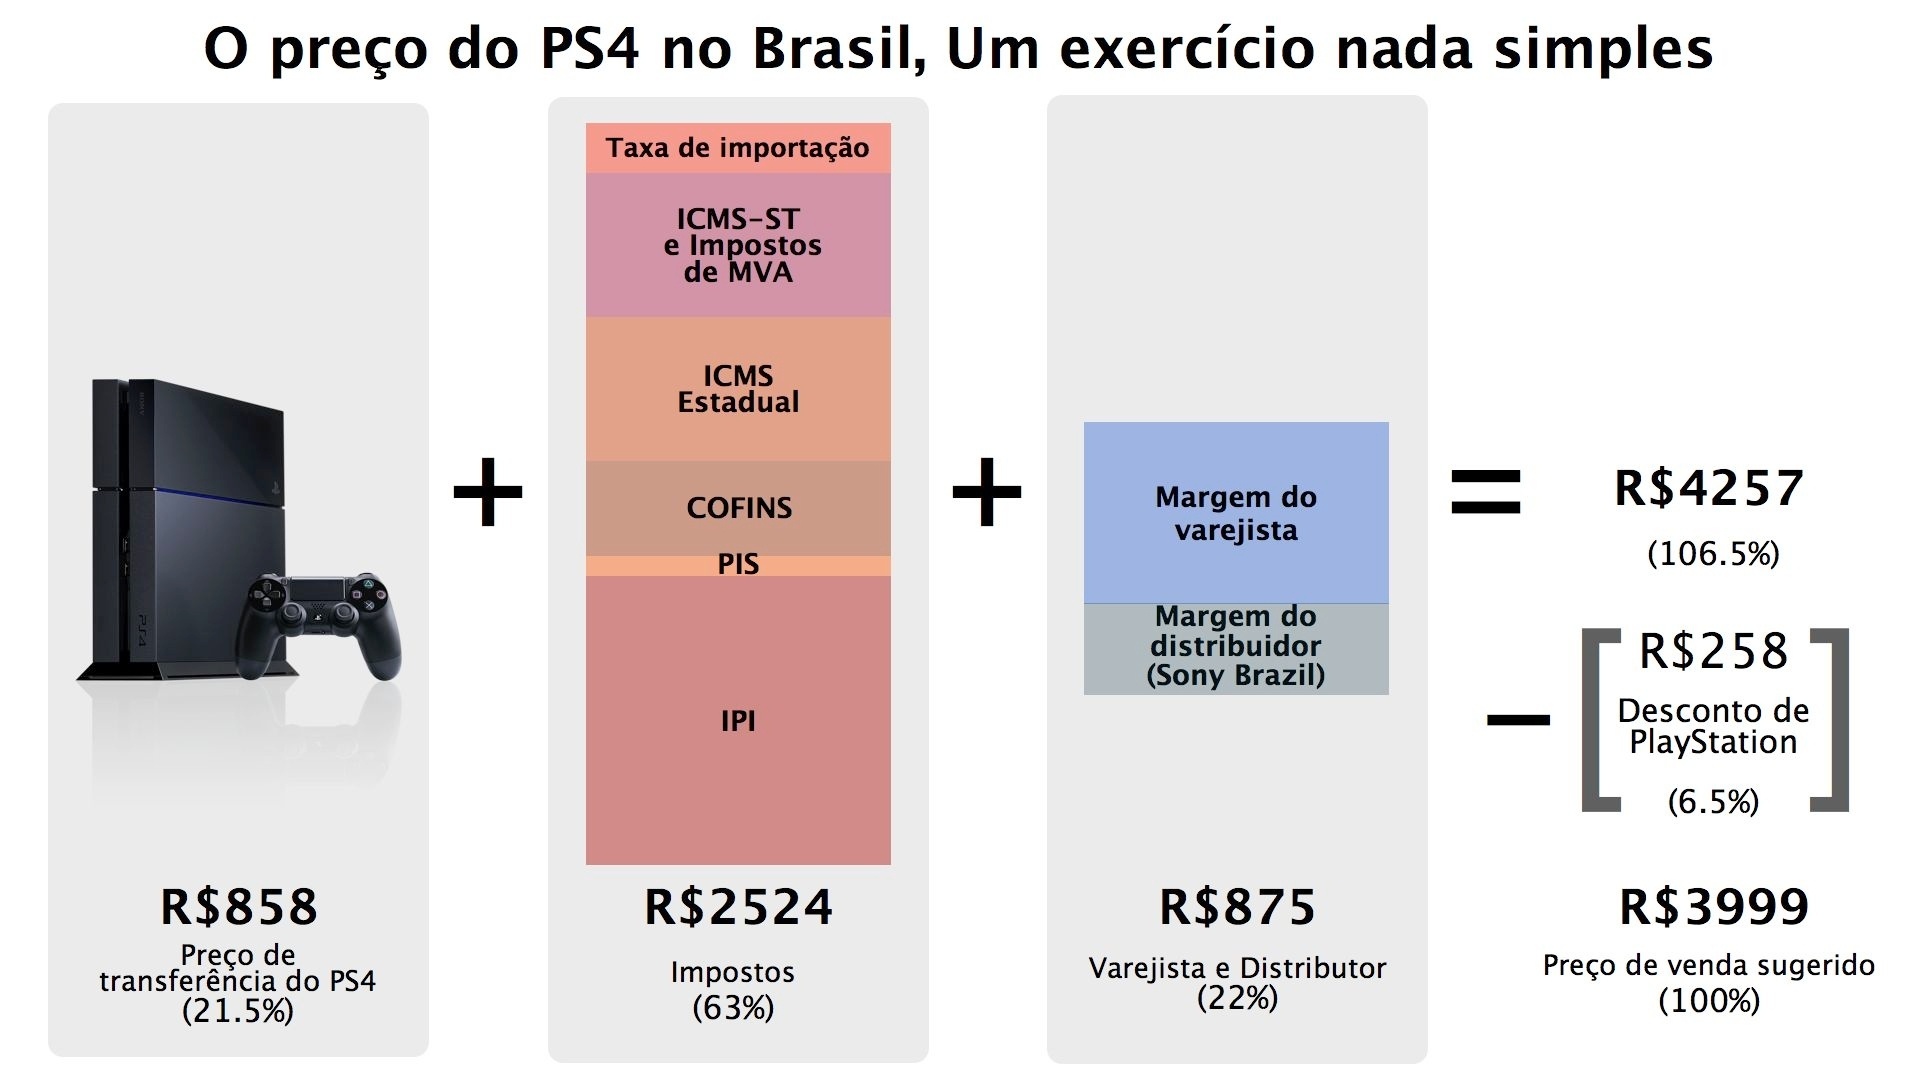 infografico-preco-do-ps4-no-brasil-1382370722899_1920x1080.jpg